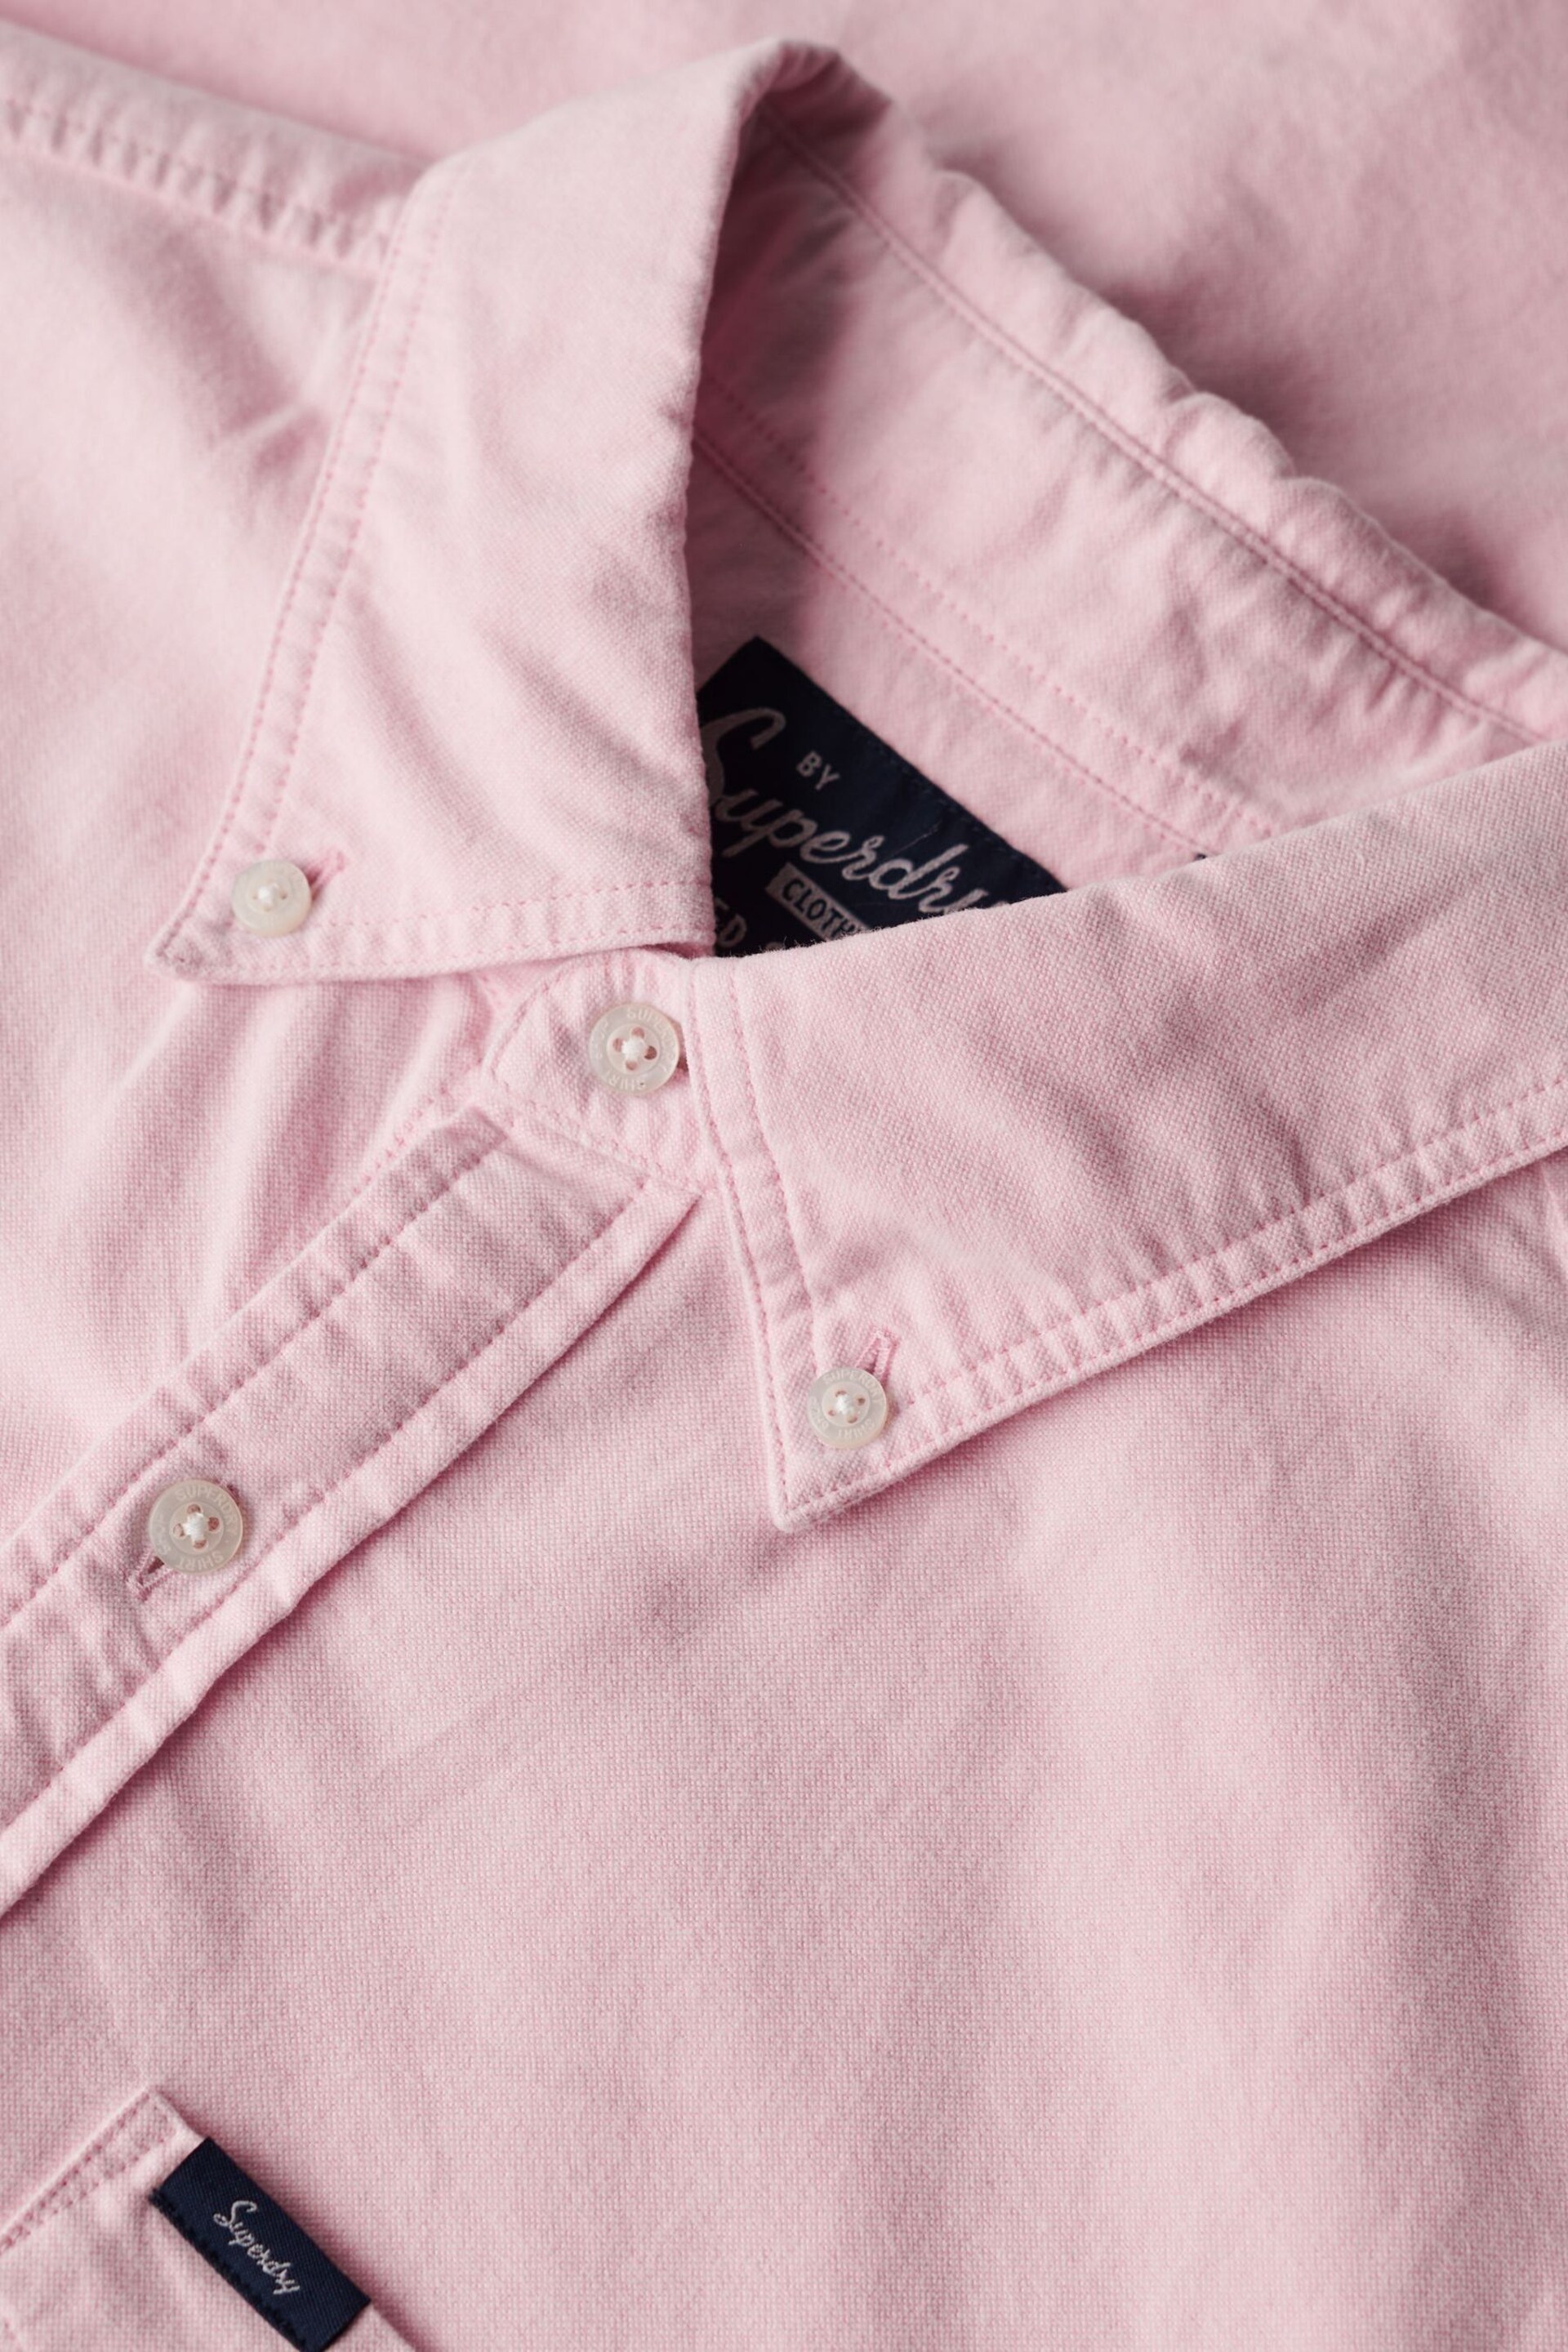 Superdry Pink Vintage Oxford Short Sleeve Shirt - Image 7 of 8